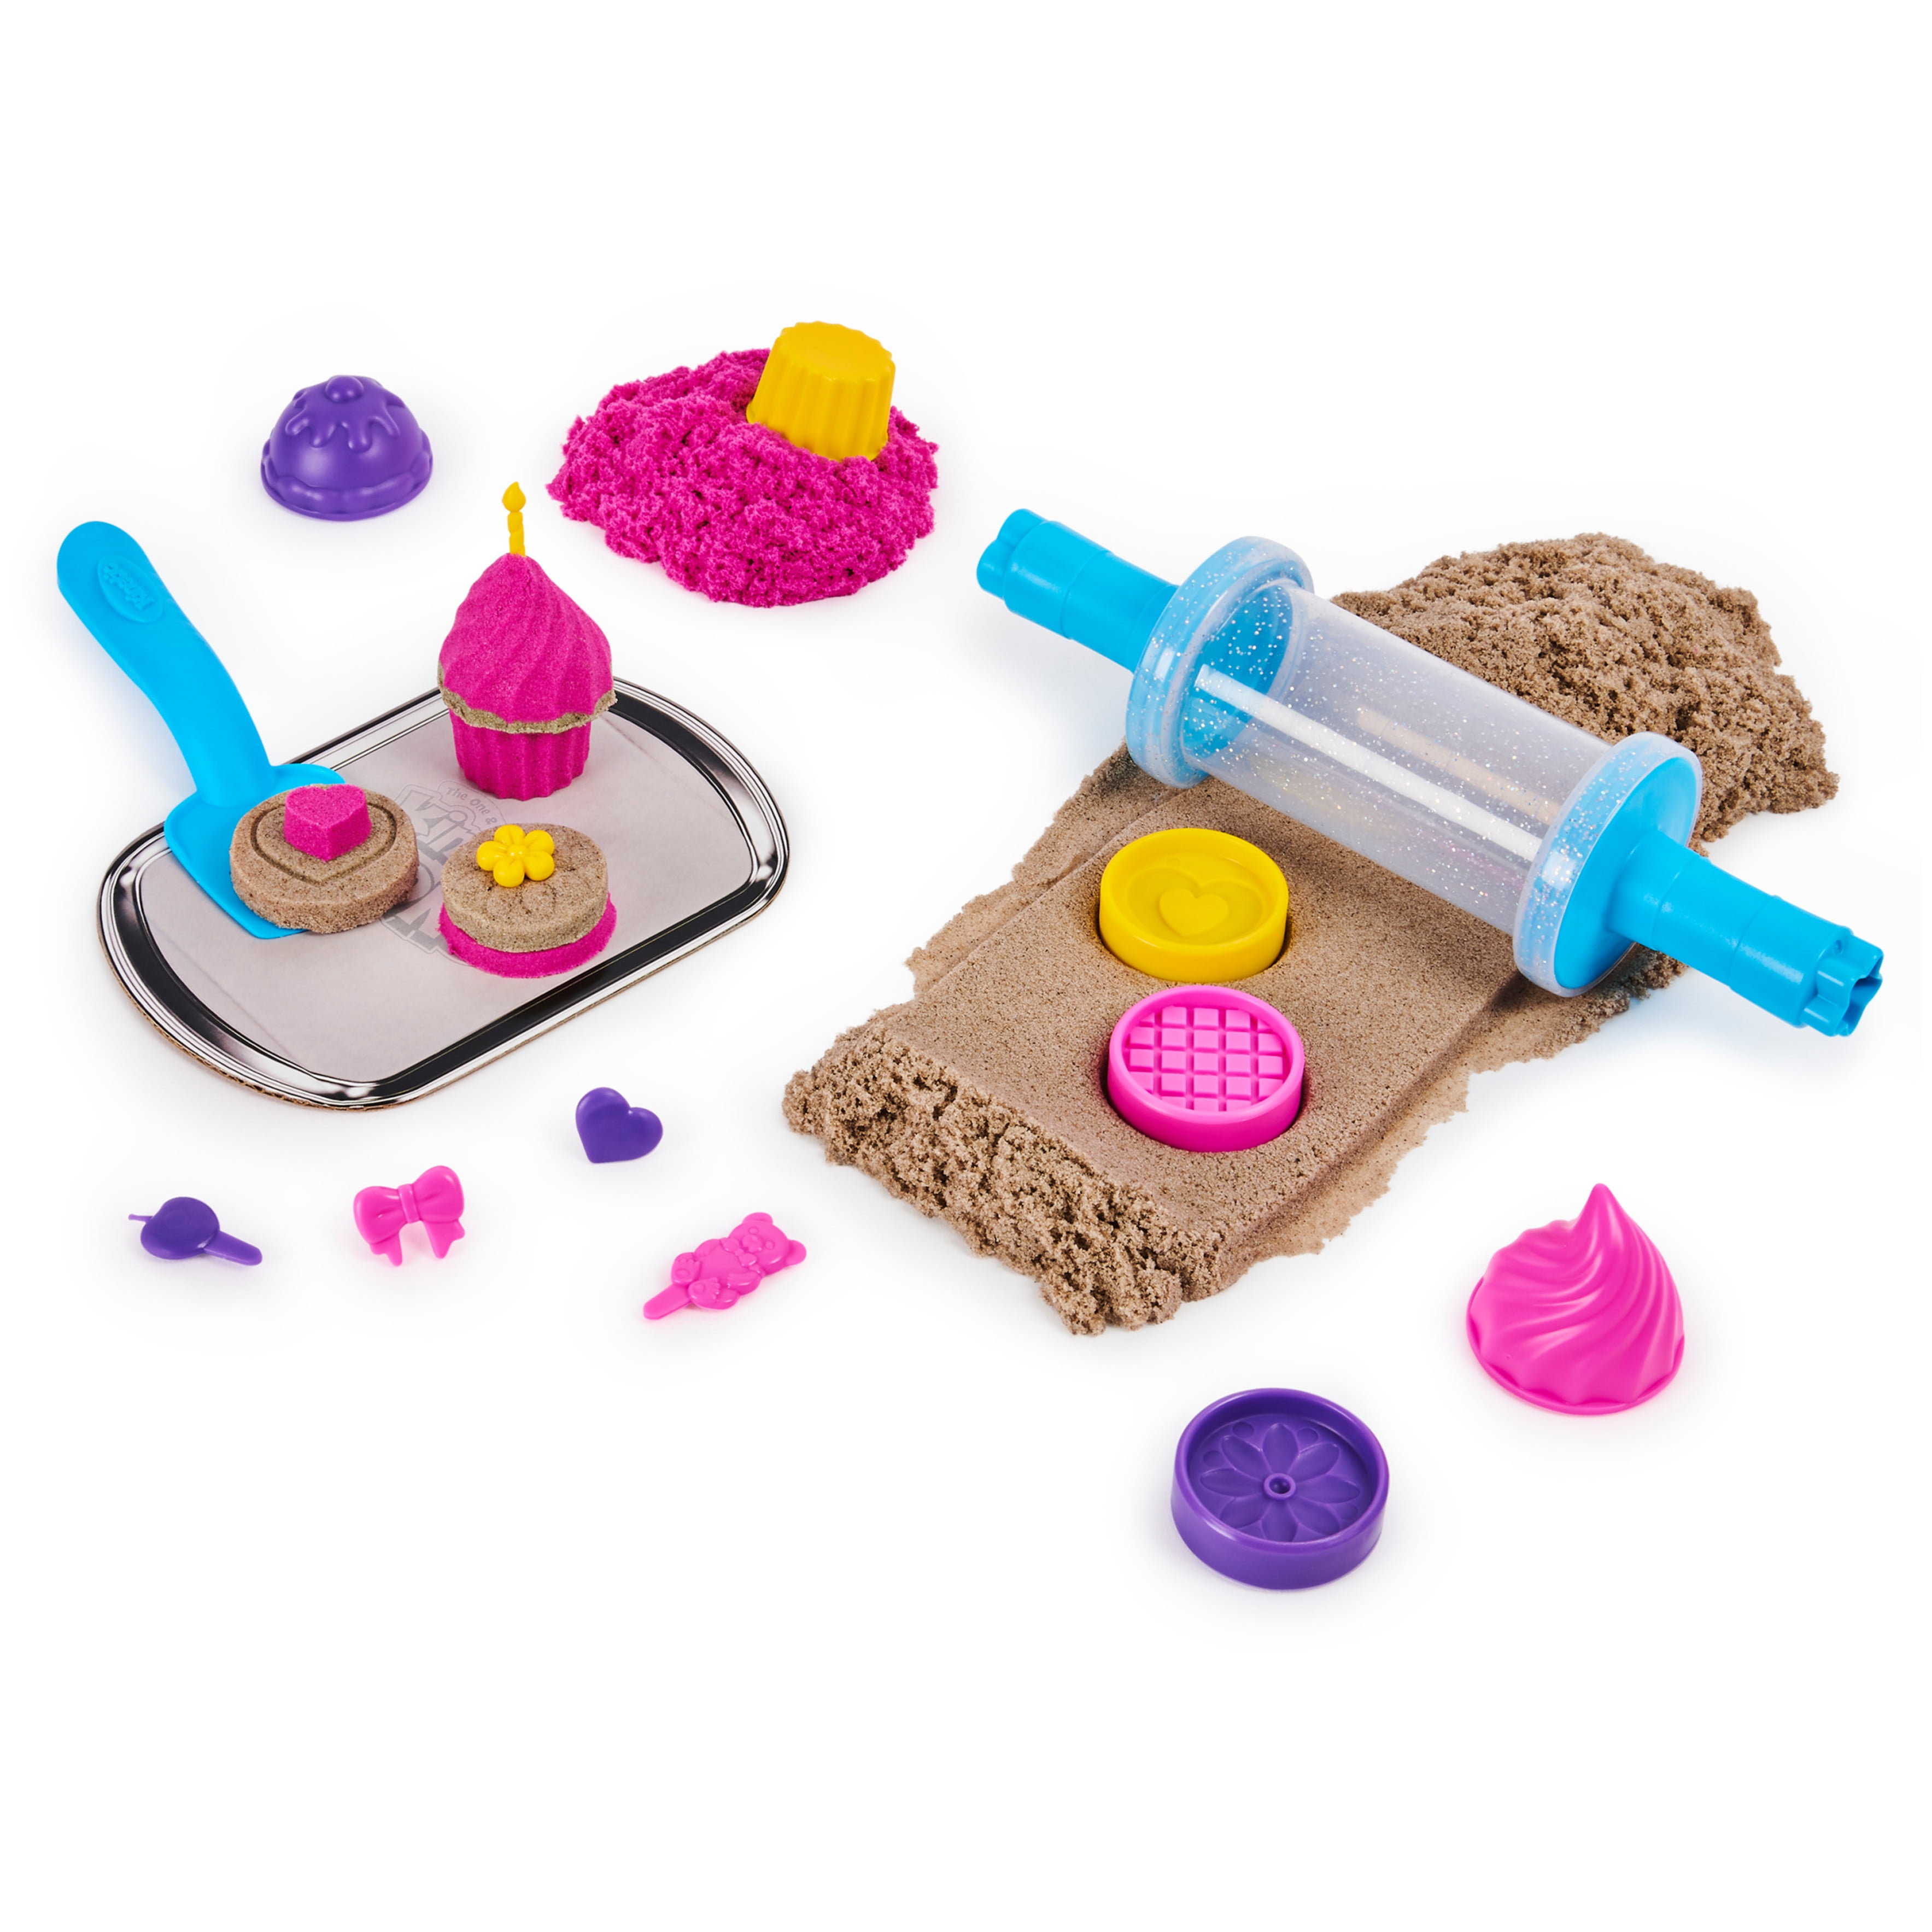 Spin Master - Kinetic Sand, Bake Shoppe Playset with 1lb of Kinetic Sa